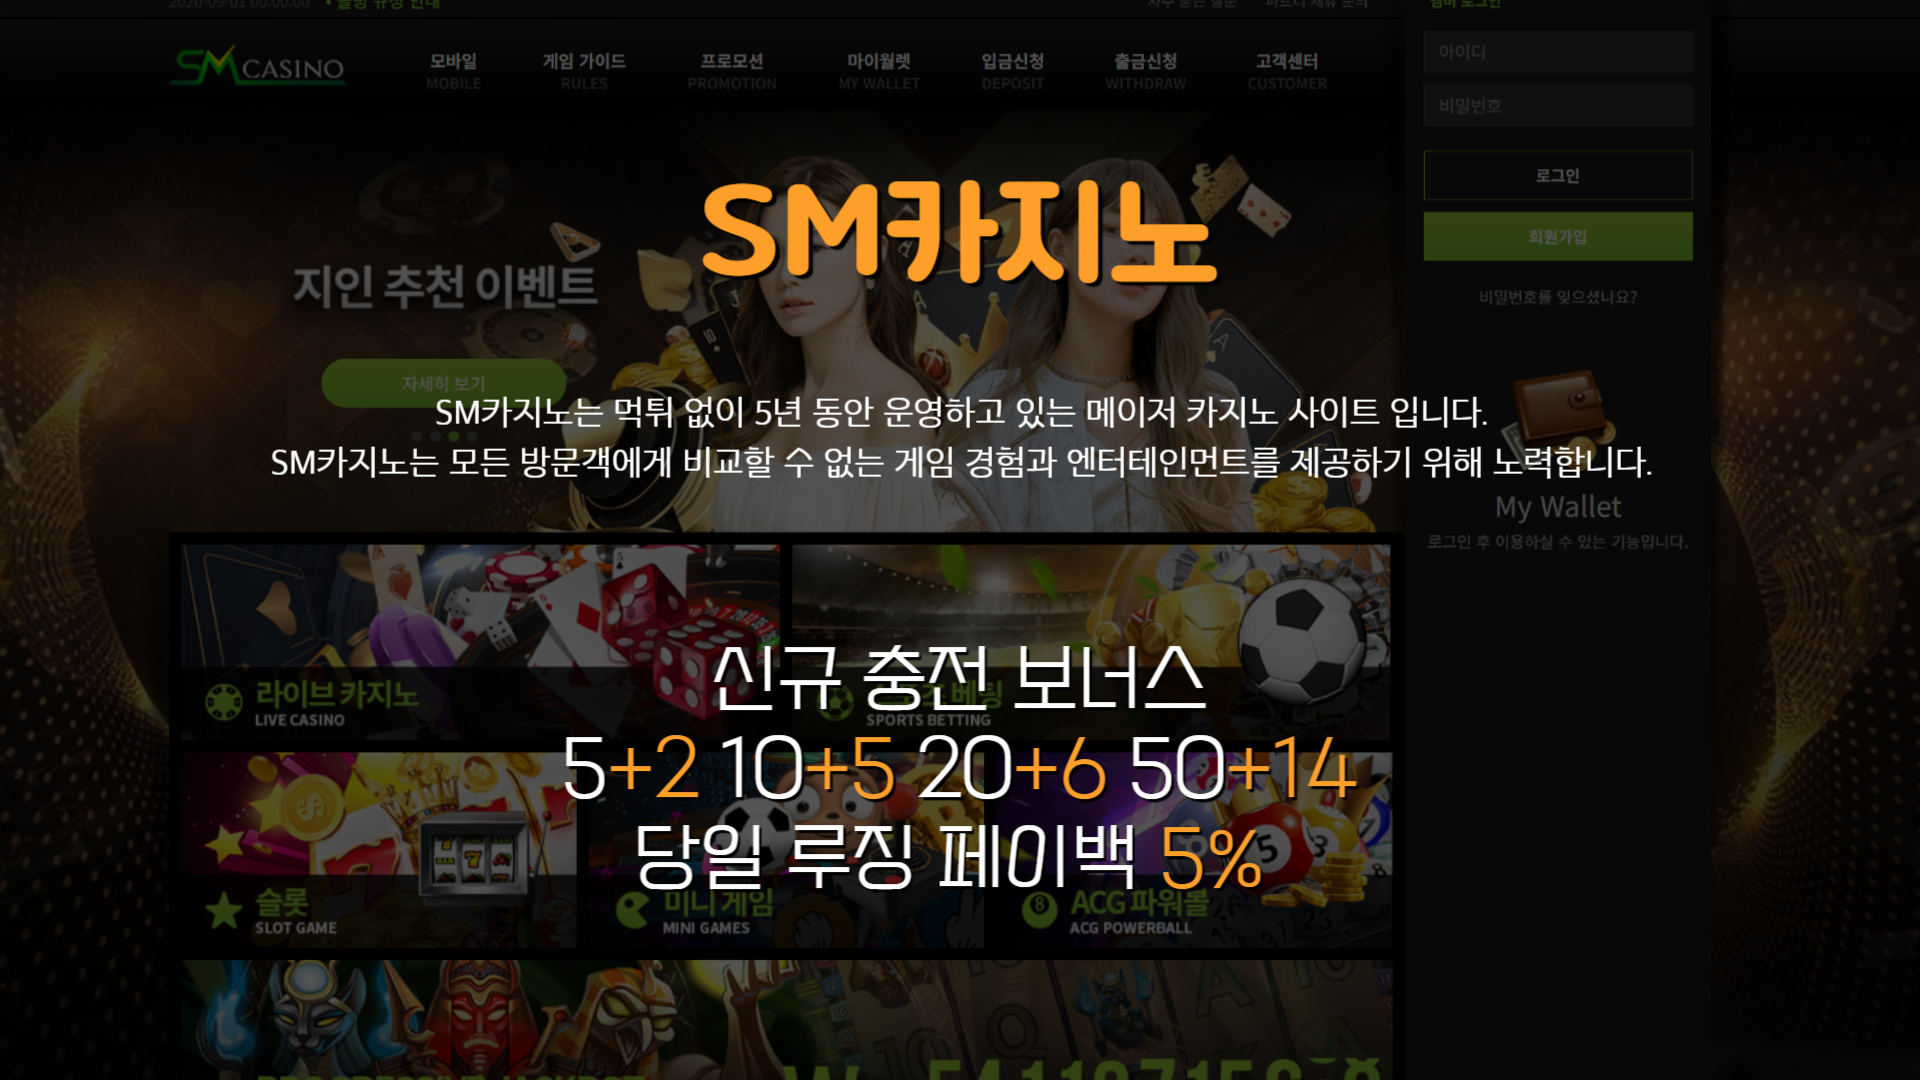 SM카지노 - 먹튀 보증 안전한 메이저 사이트 - SM카지노